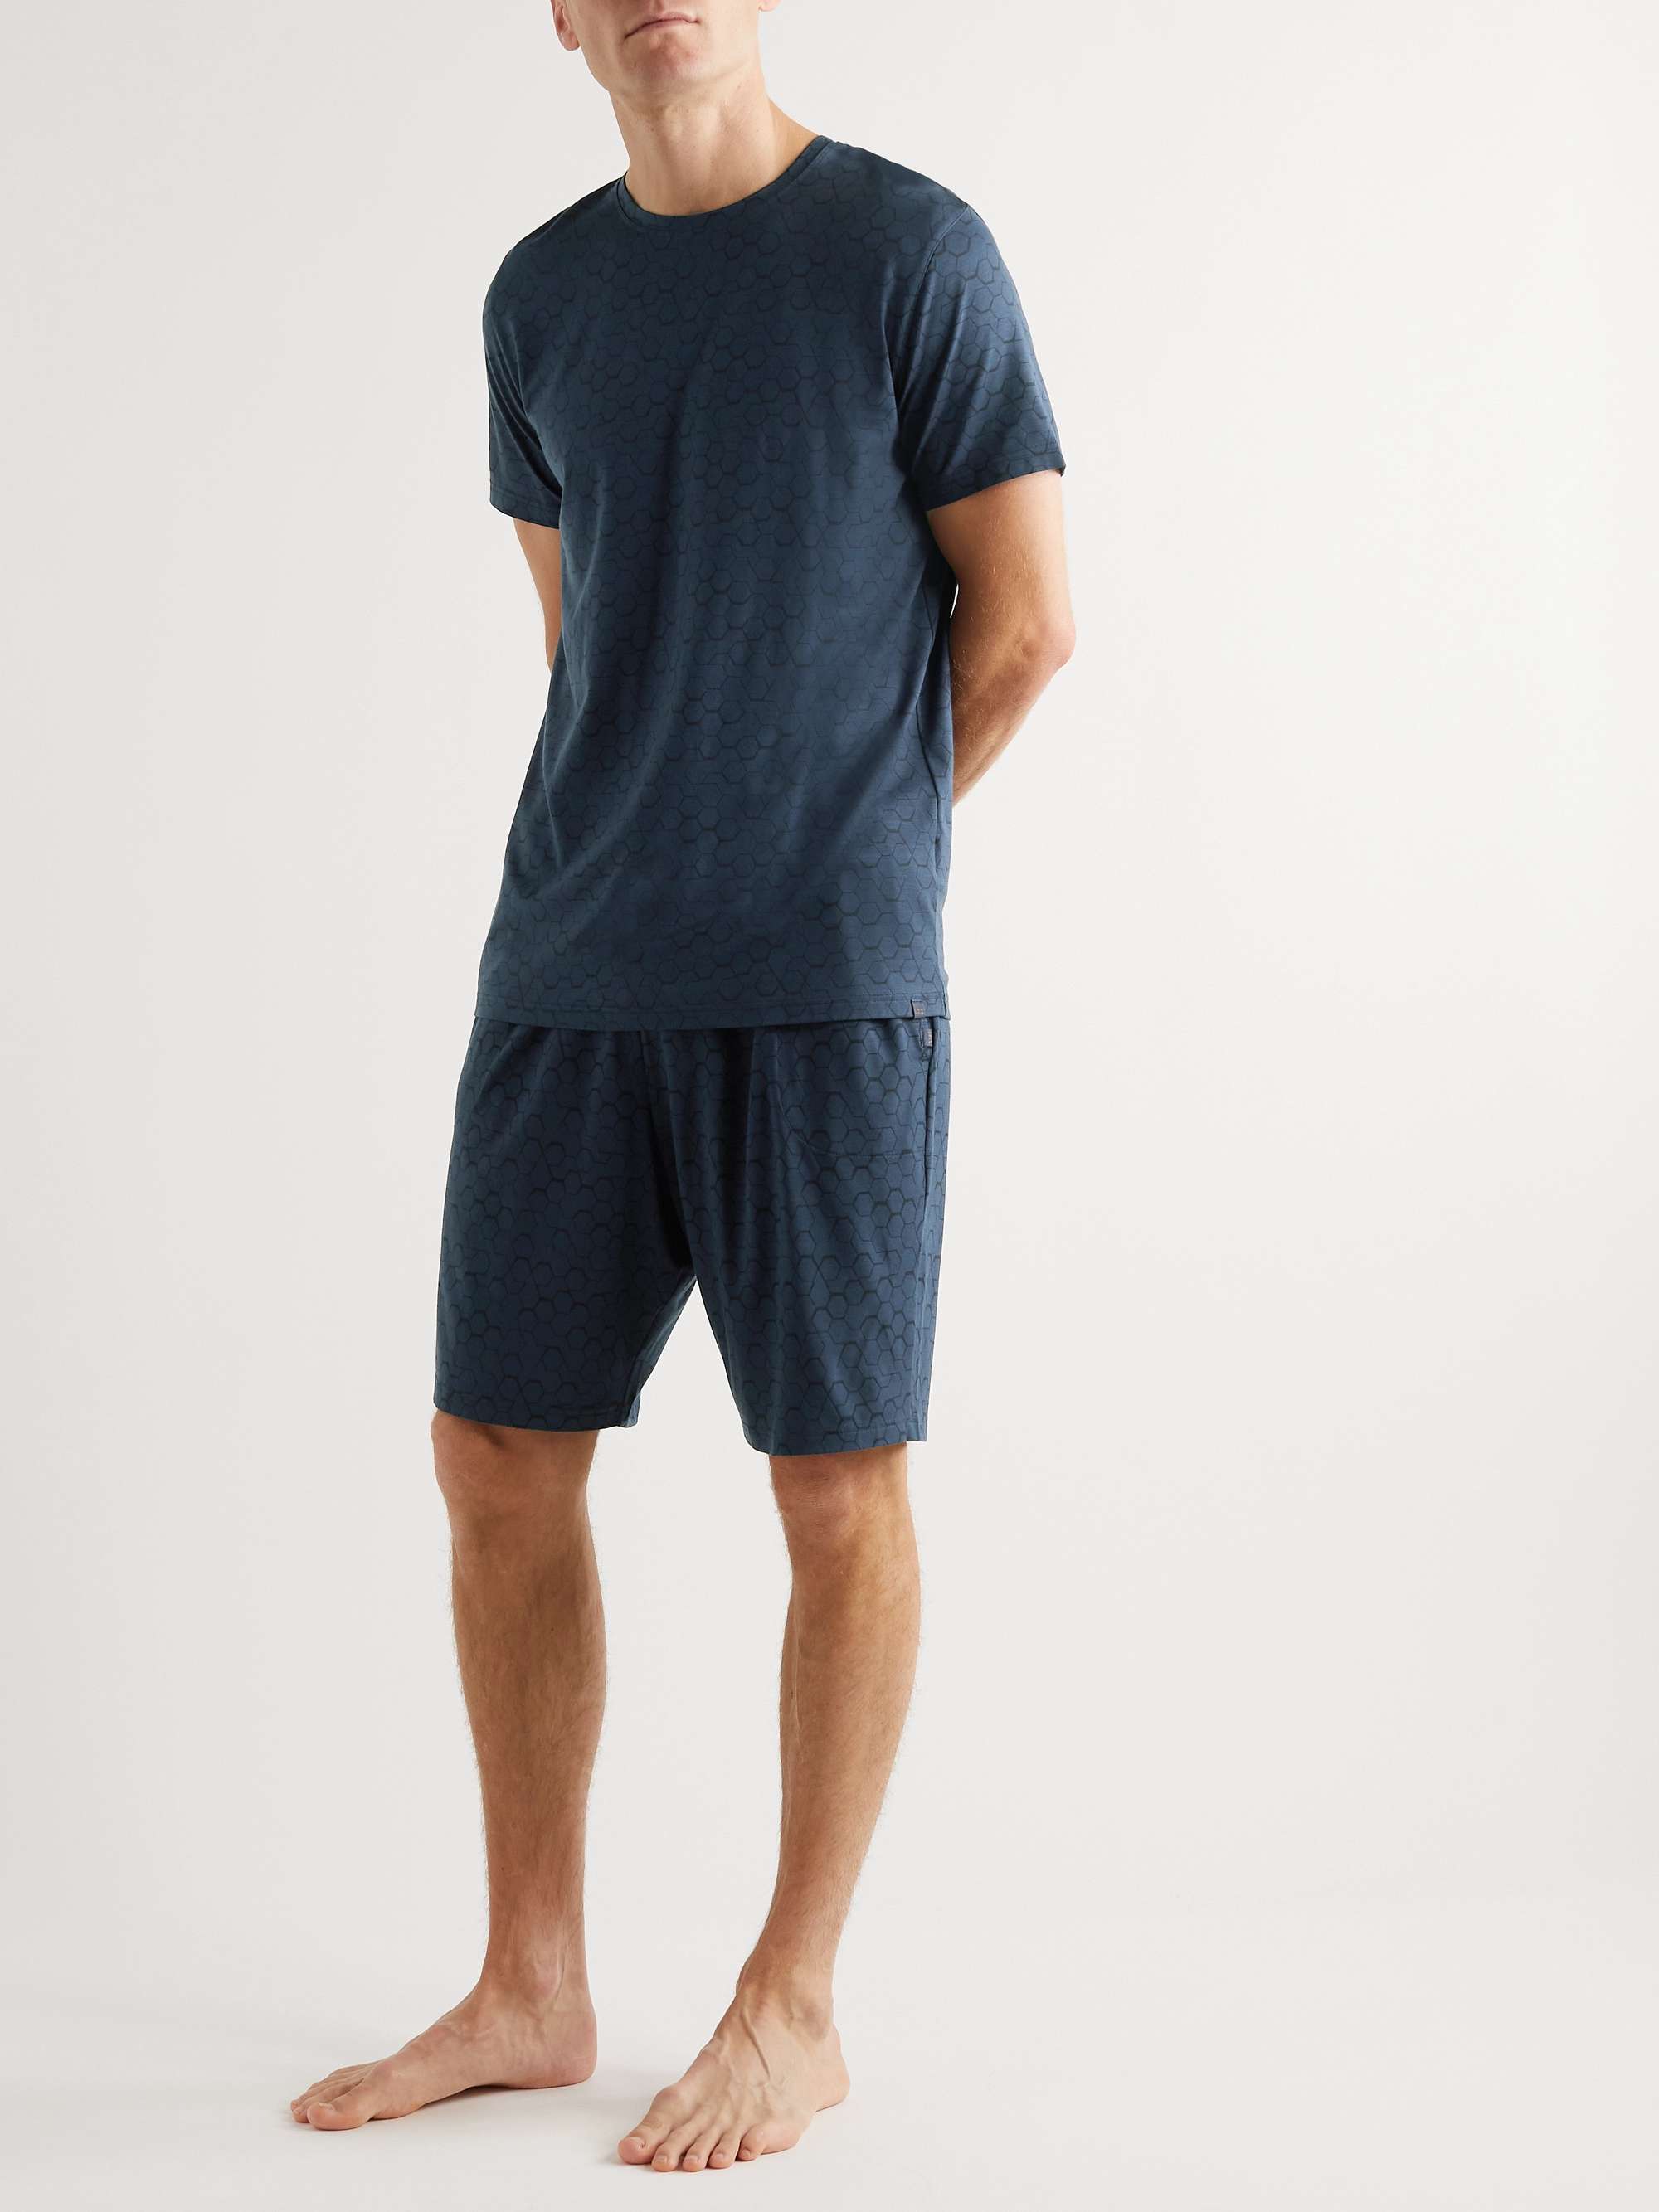 DEREK ROSE London Printed Micro Modal Jersey Pyjama Shorts